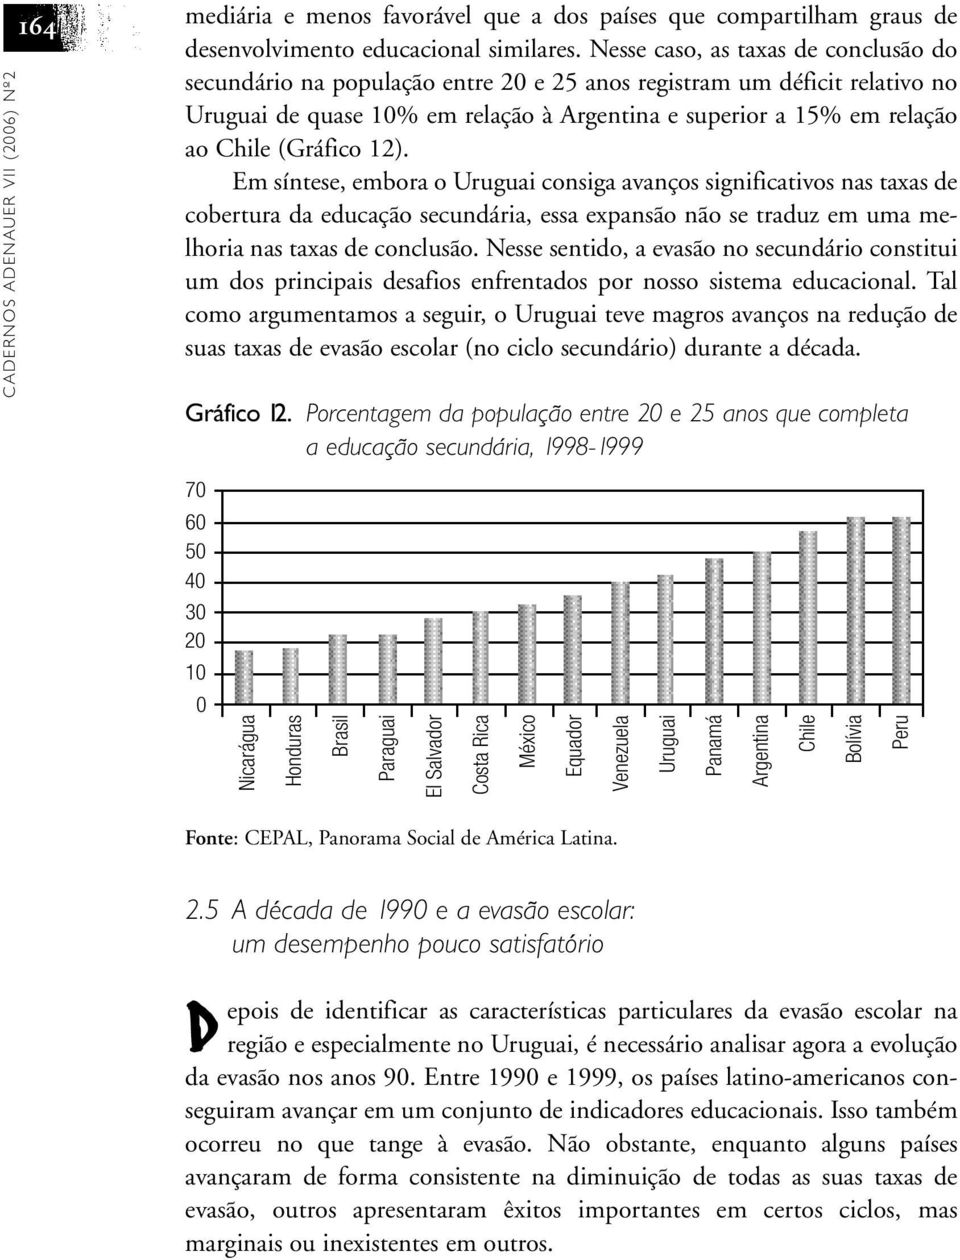 (Gráfico 12). Em síntese, embora o Uruguai consiga avanços significativos nas taxas de cobertura da educação secundária, essa expansão não se traduz em uma melhoria nas taxas de conclusão.